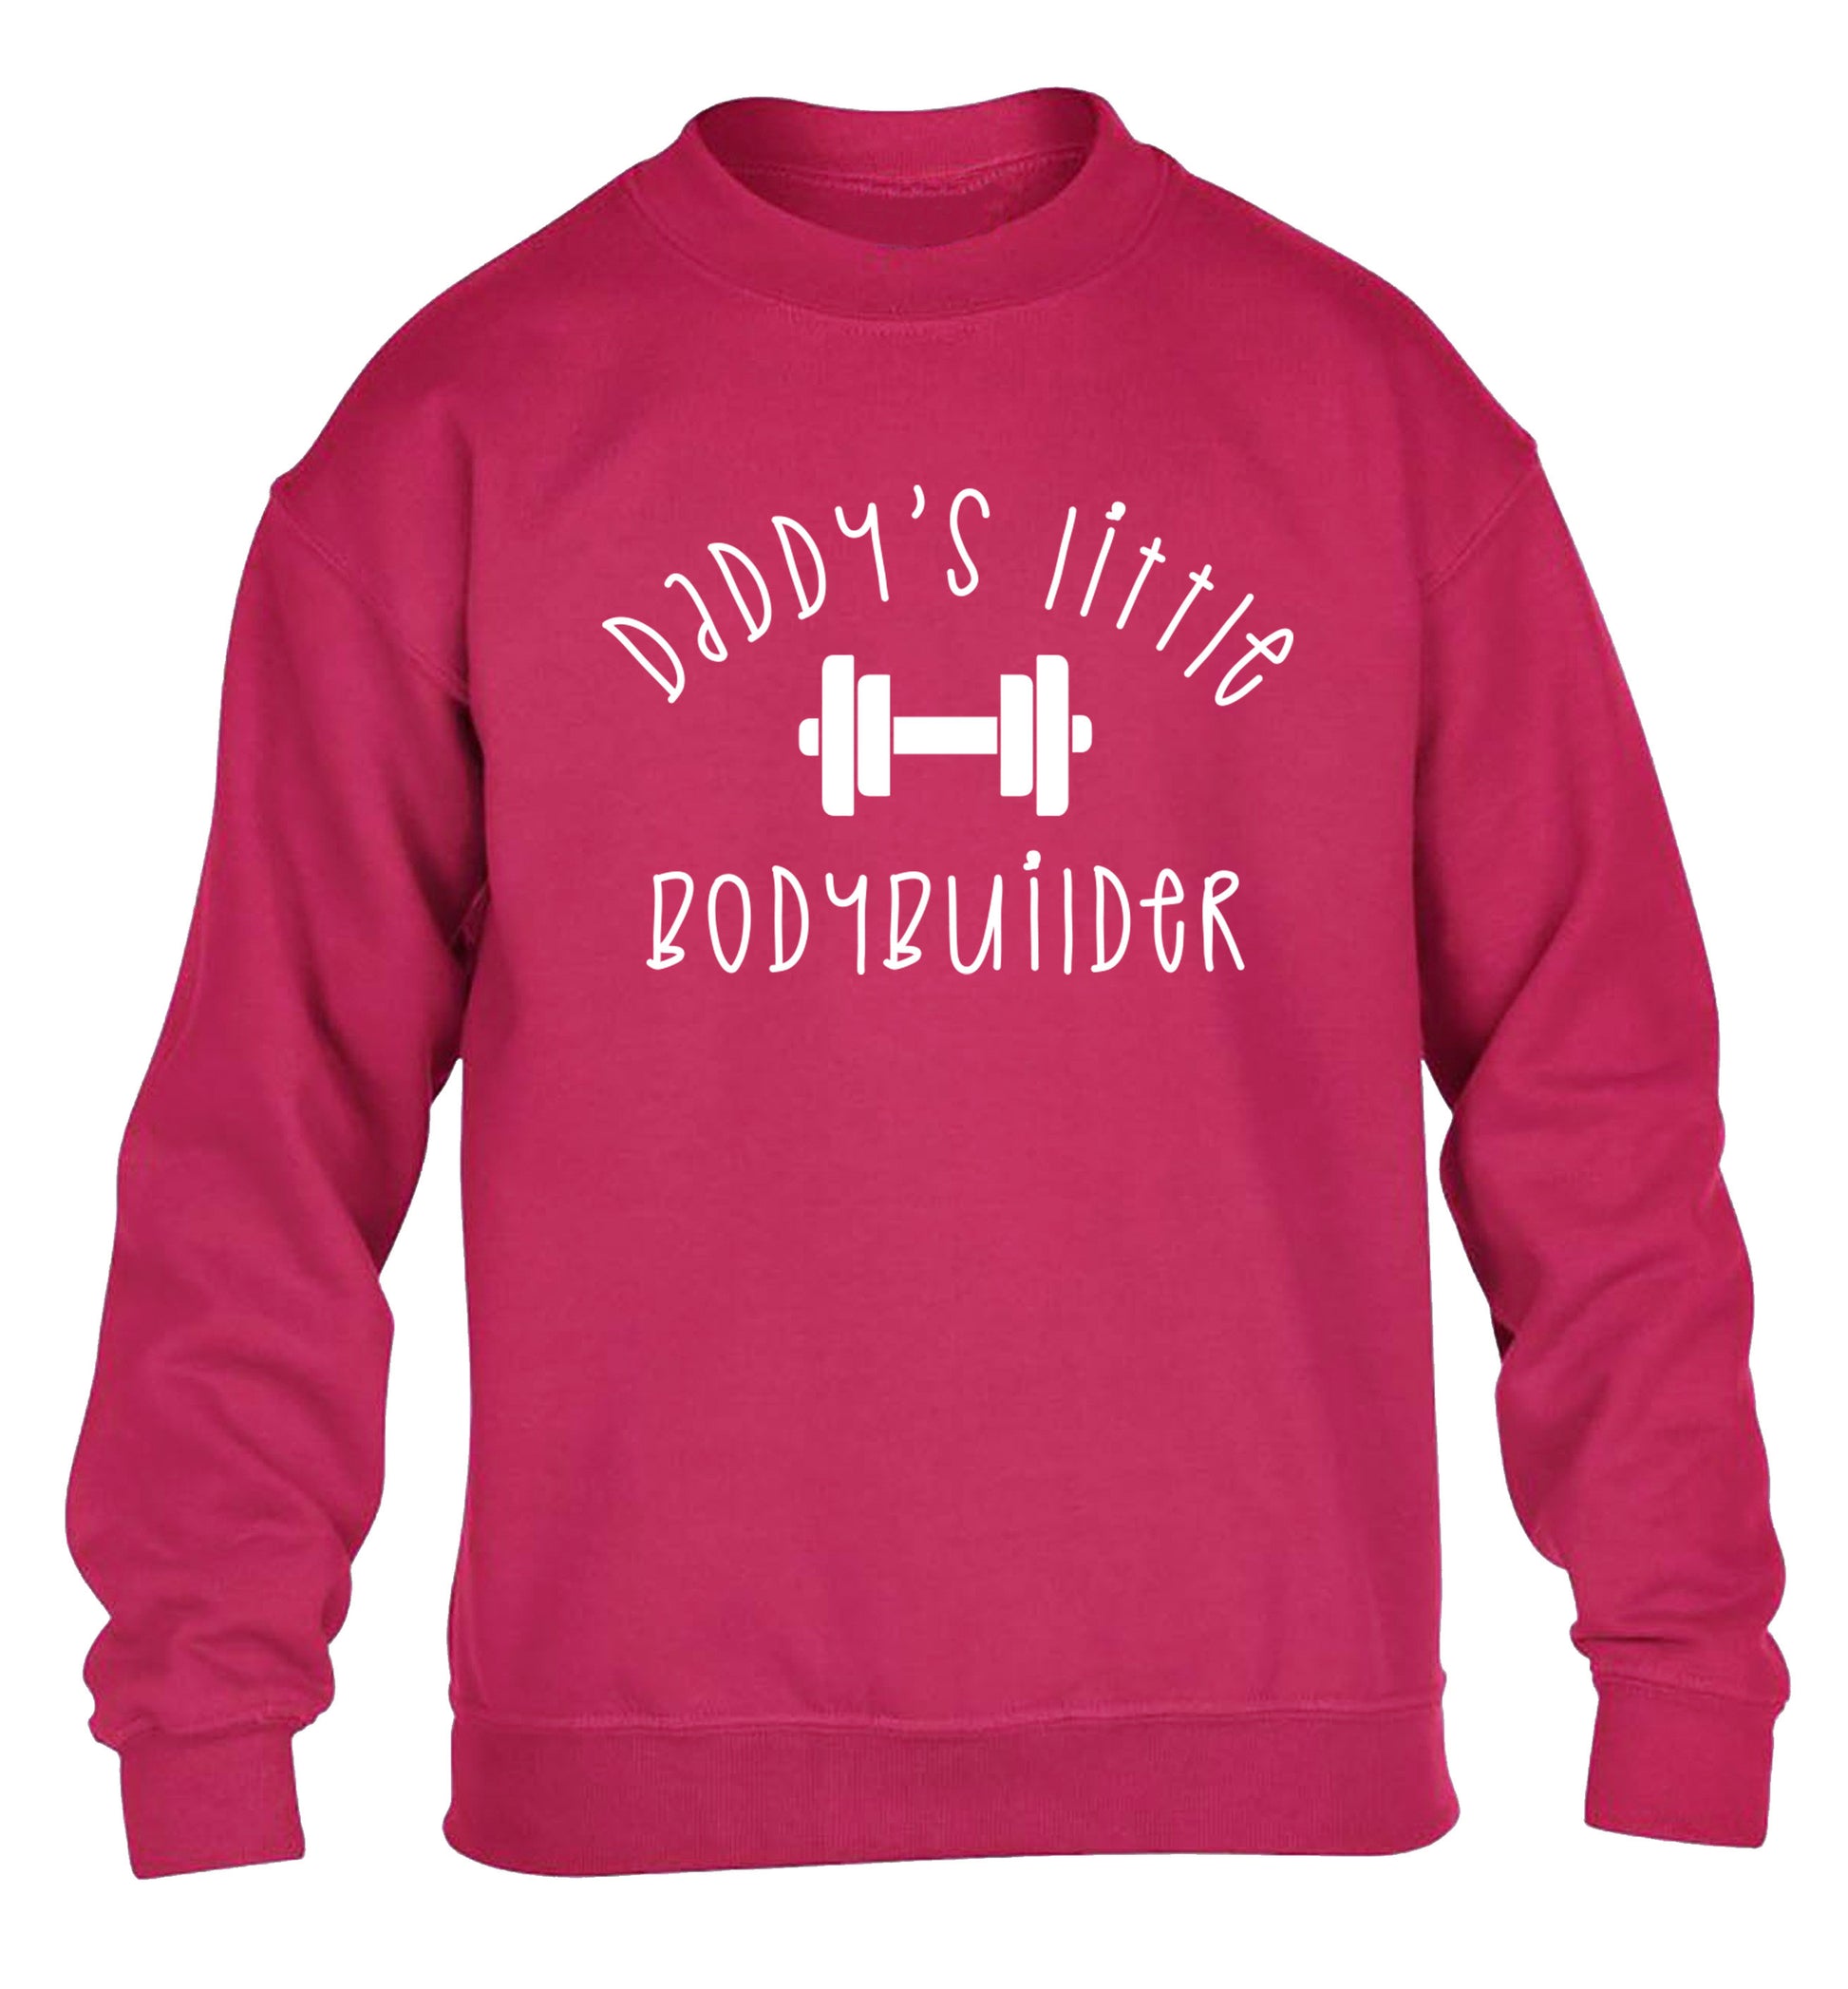 Daddy's little bodybuilder children's pink sweater 12-14 Years